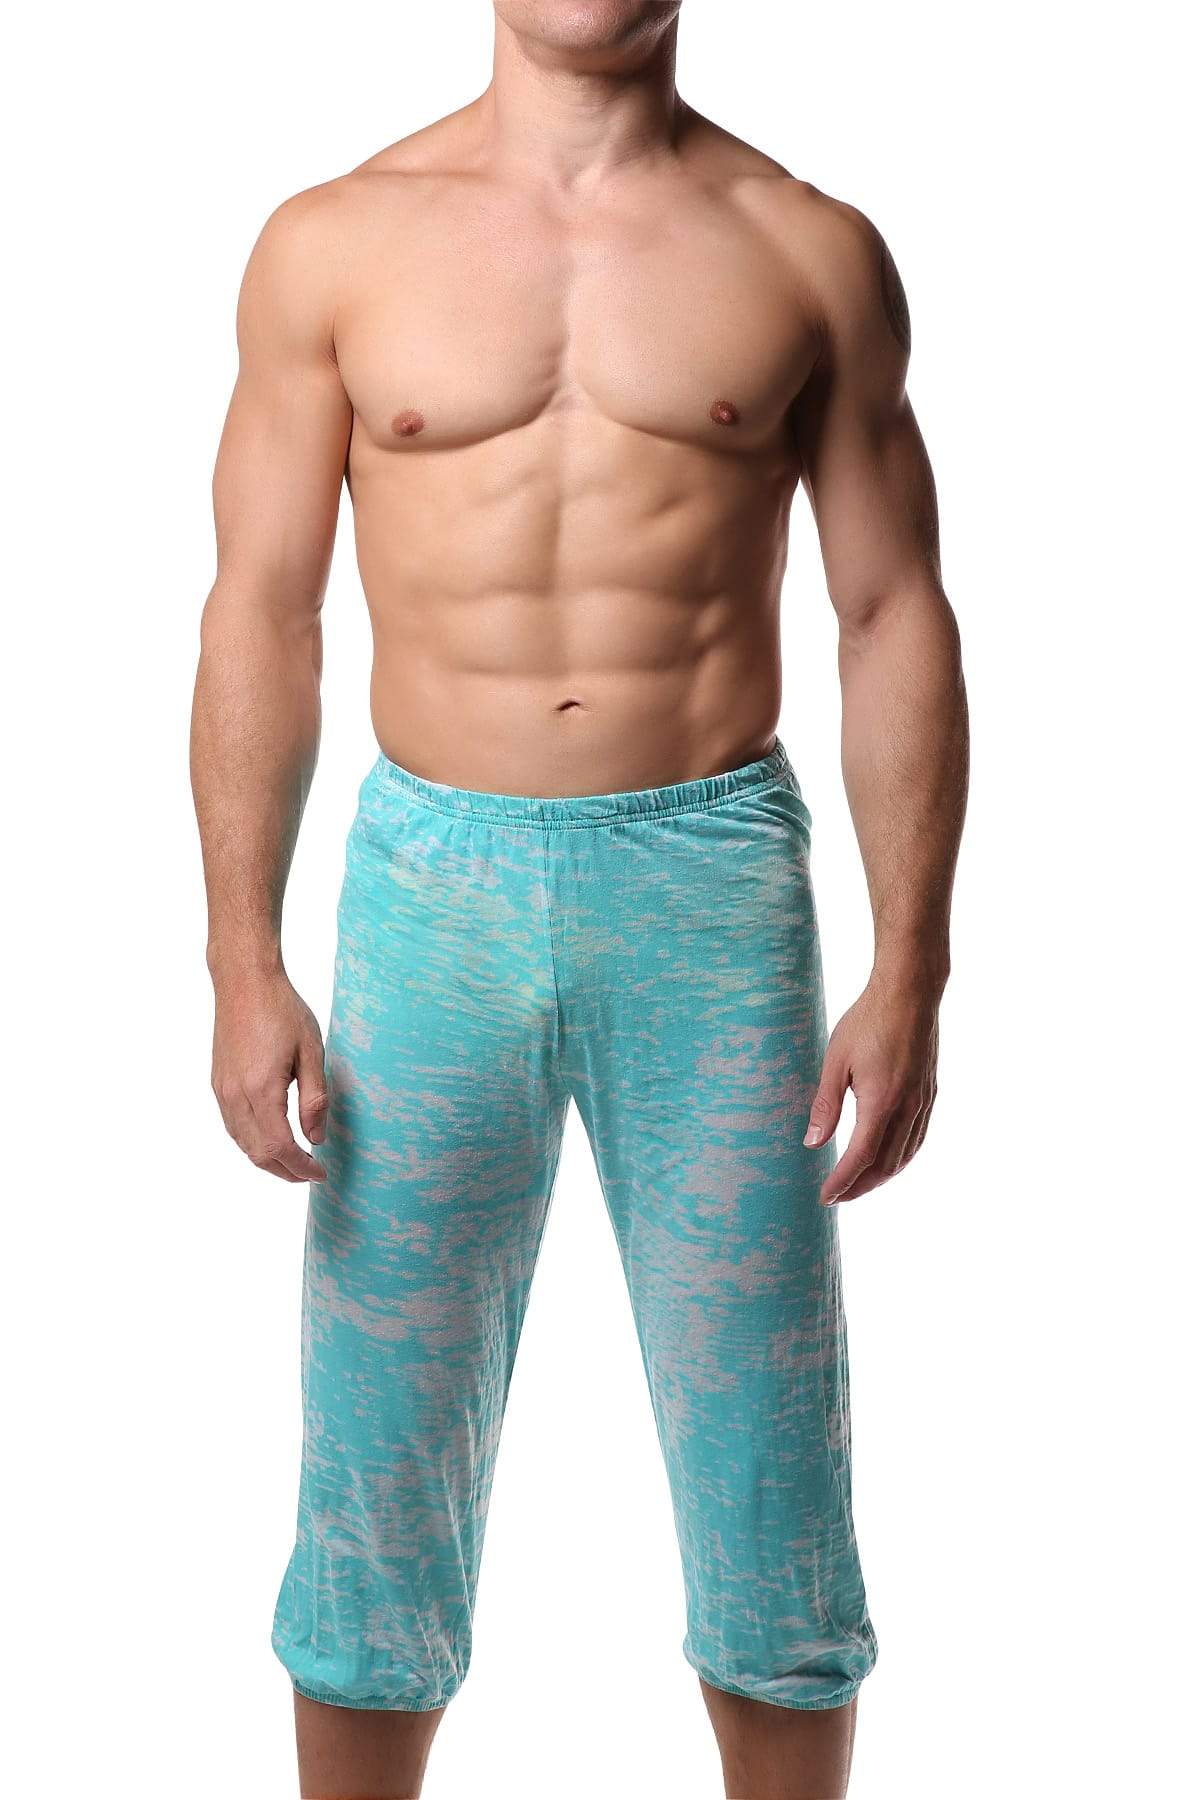 Y.M.L.A. Turquoise Burnout Yoga Pant